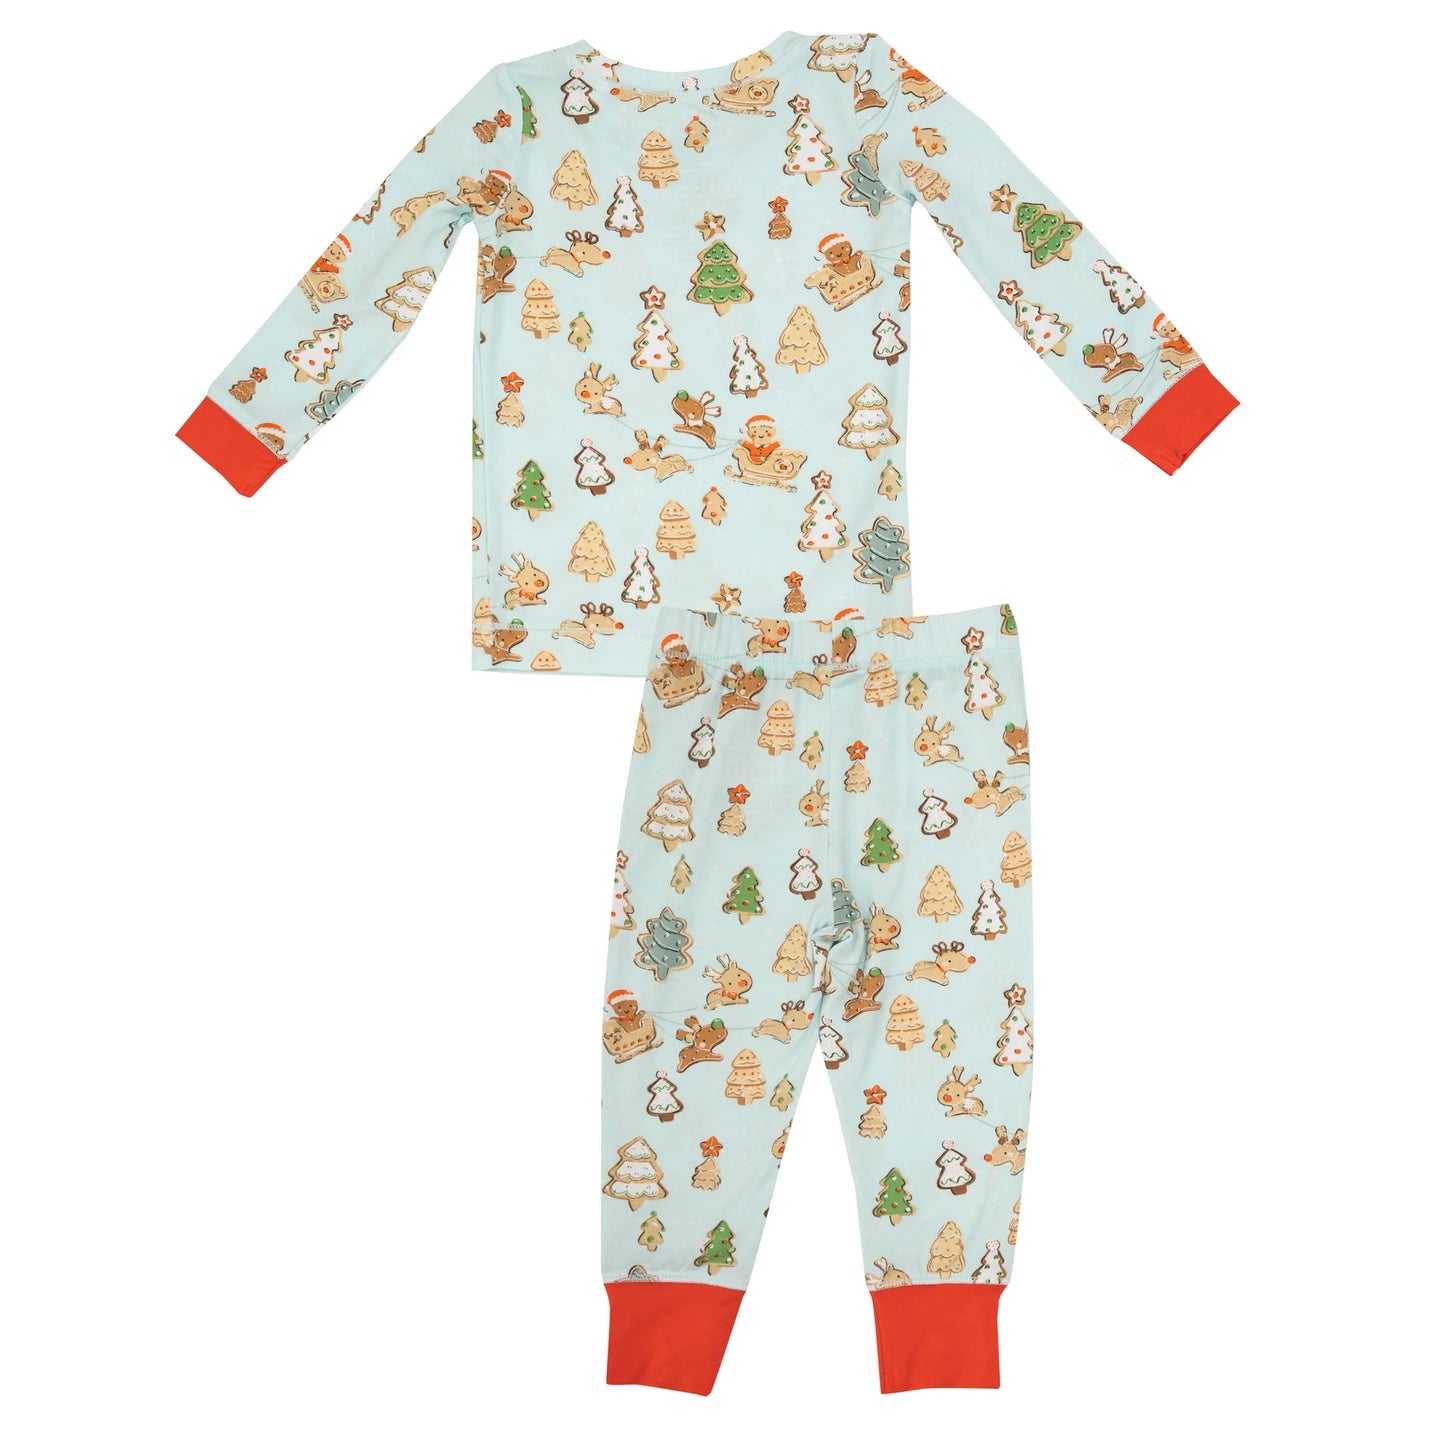 2 Piece Pajamas - Gingerbread Sleigh Ride